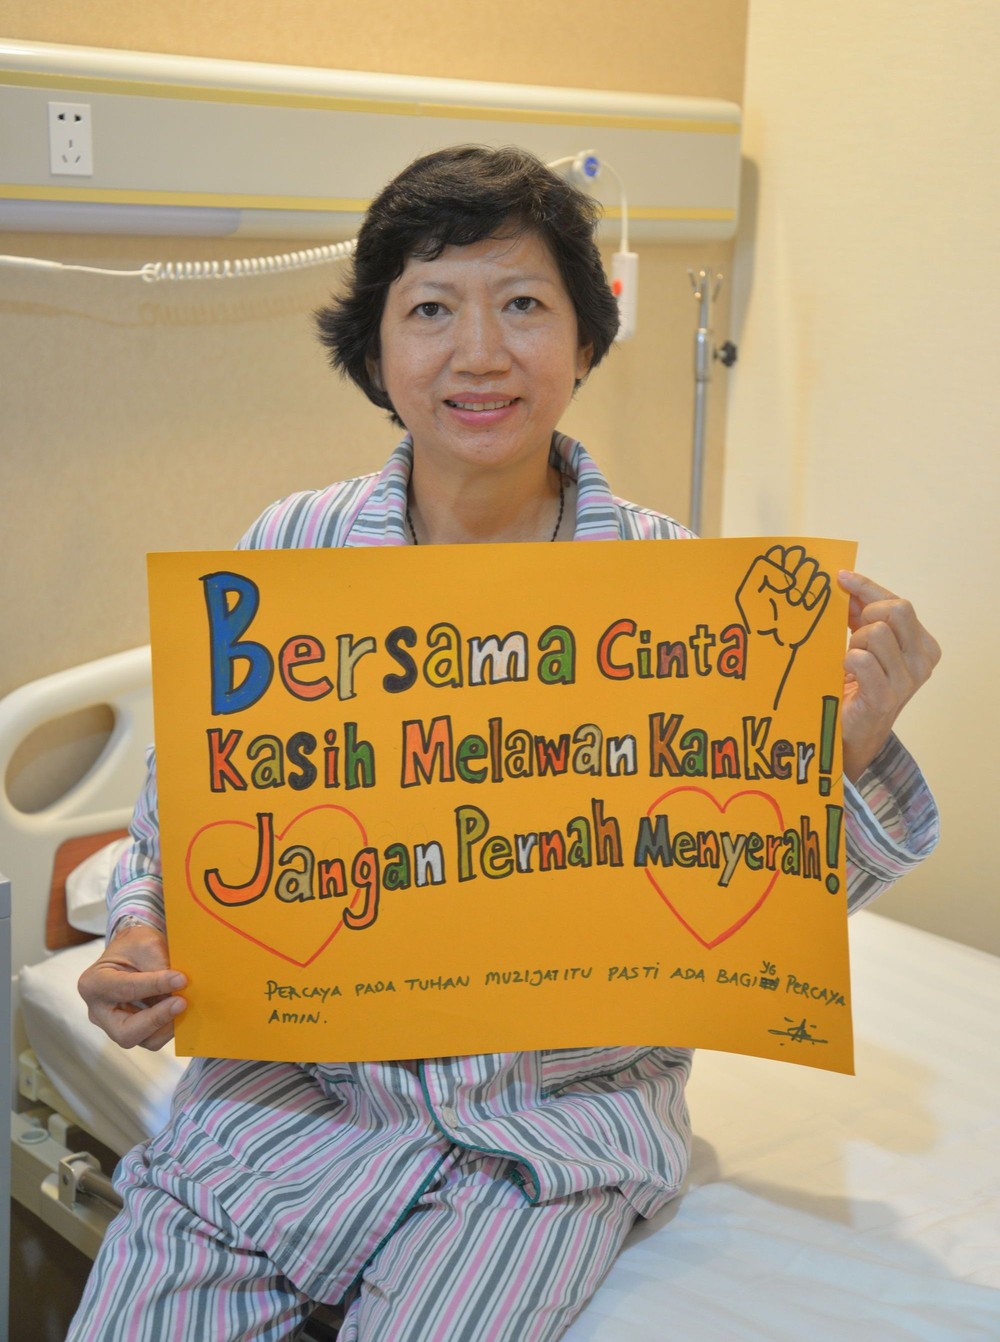 病情好轉的博惠芳很樂意跟其他癌症患者分享抗癌心得。